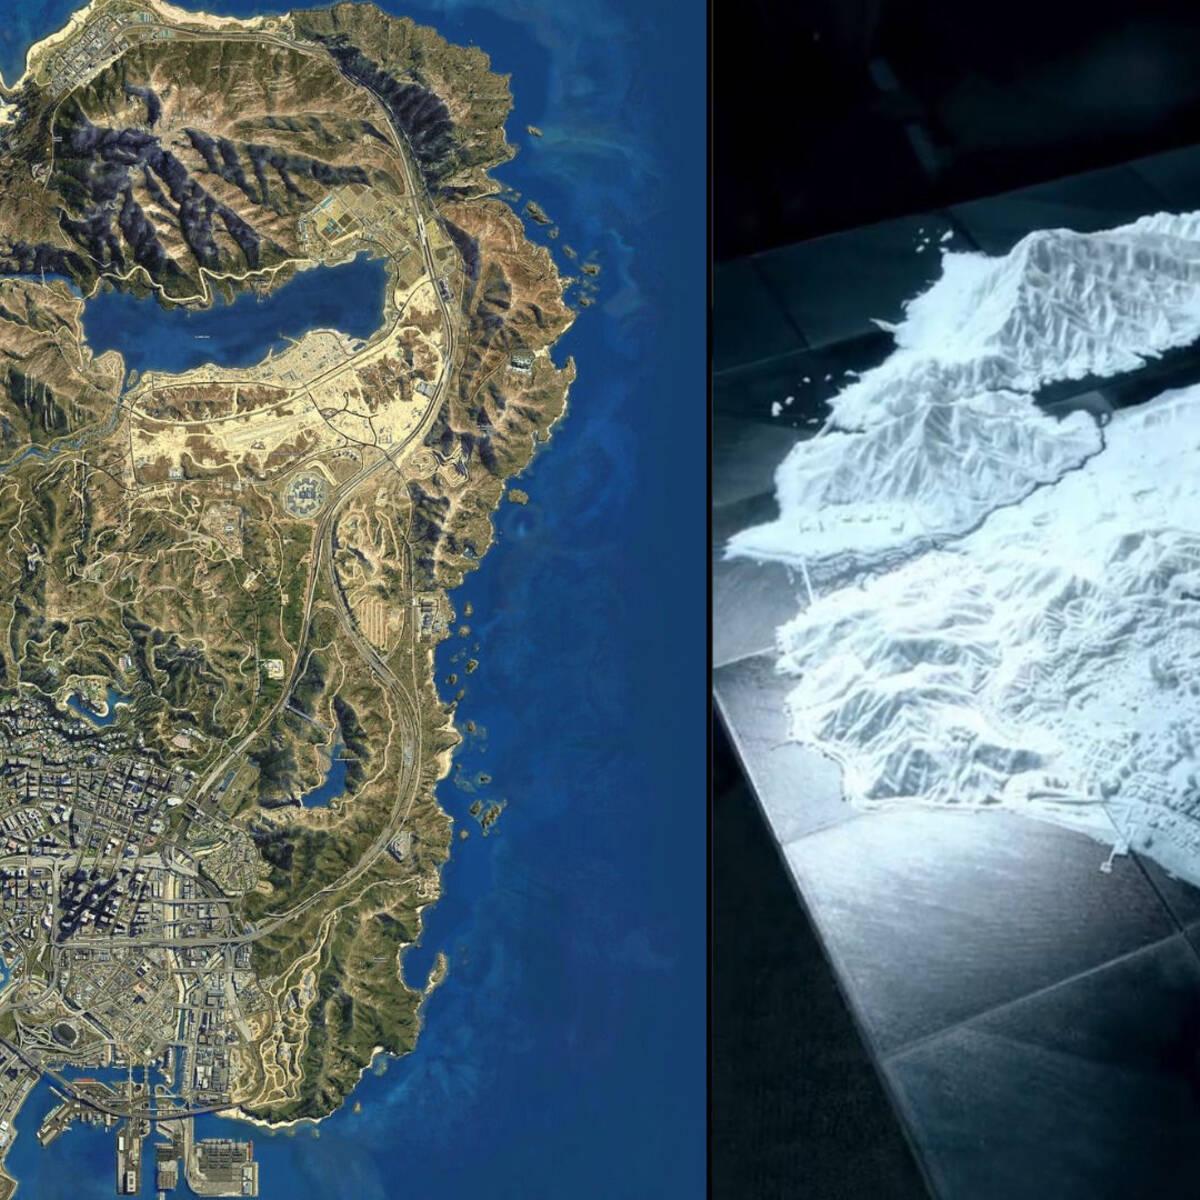 Invierte 400 horas en hacer este increíble mapa 3D de GTA 5